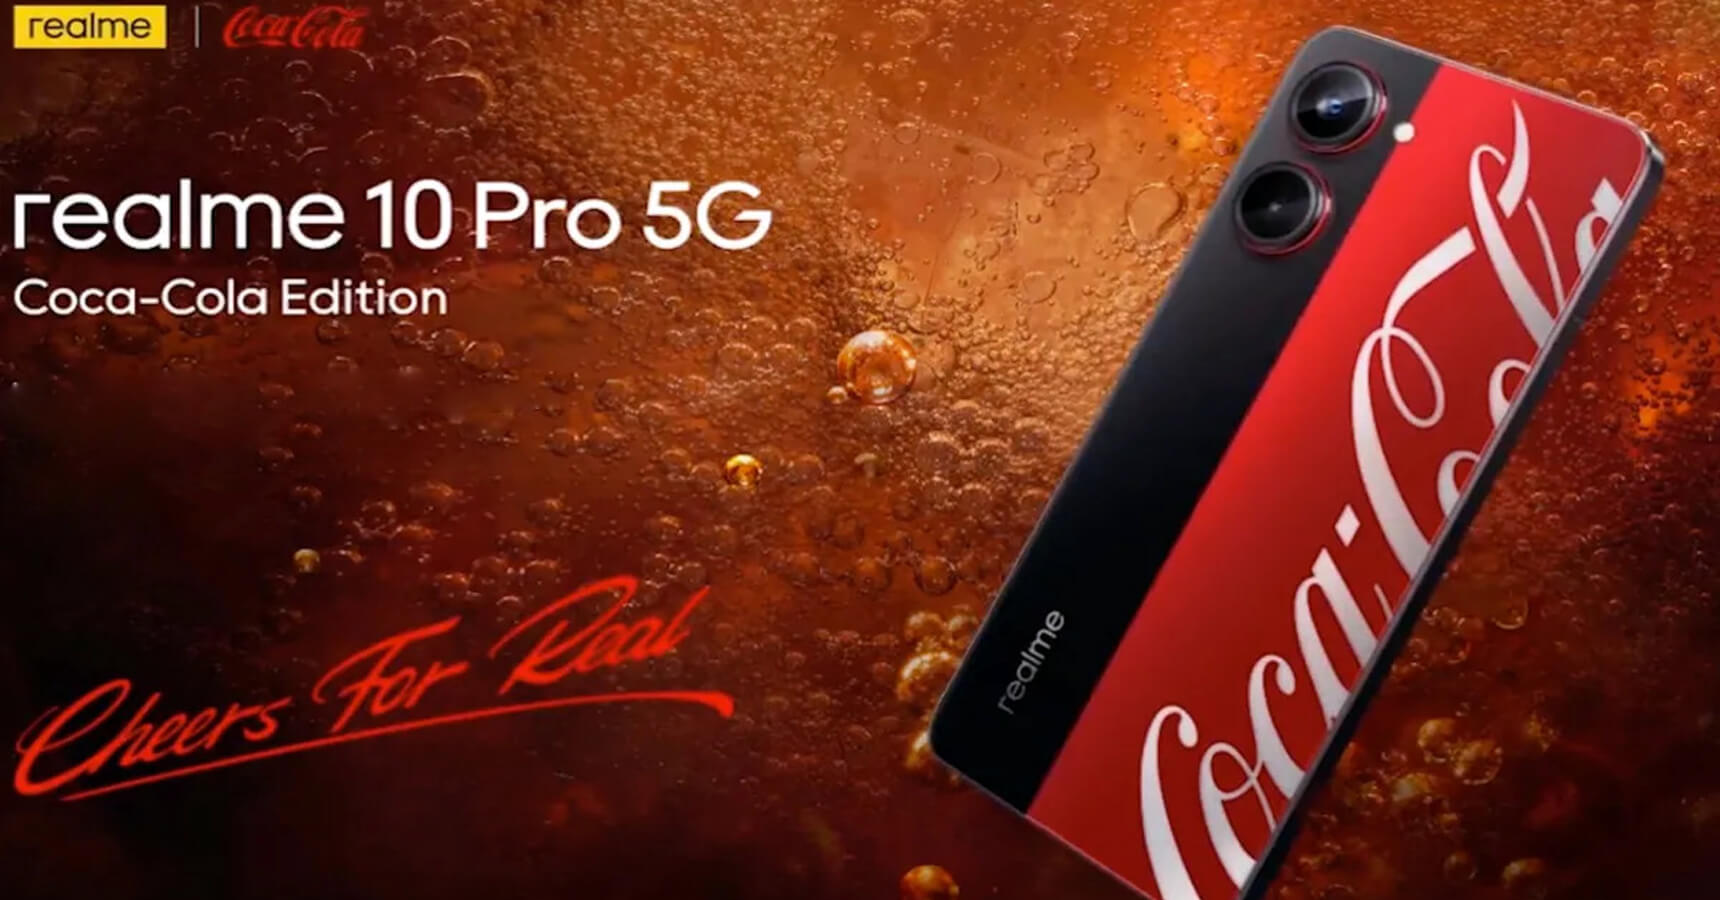 Realme 10 Pro 5G Coca-Cola Edition Video released